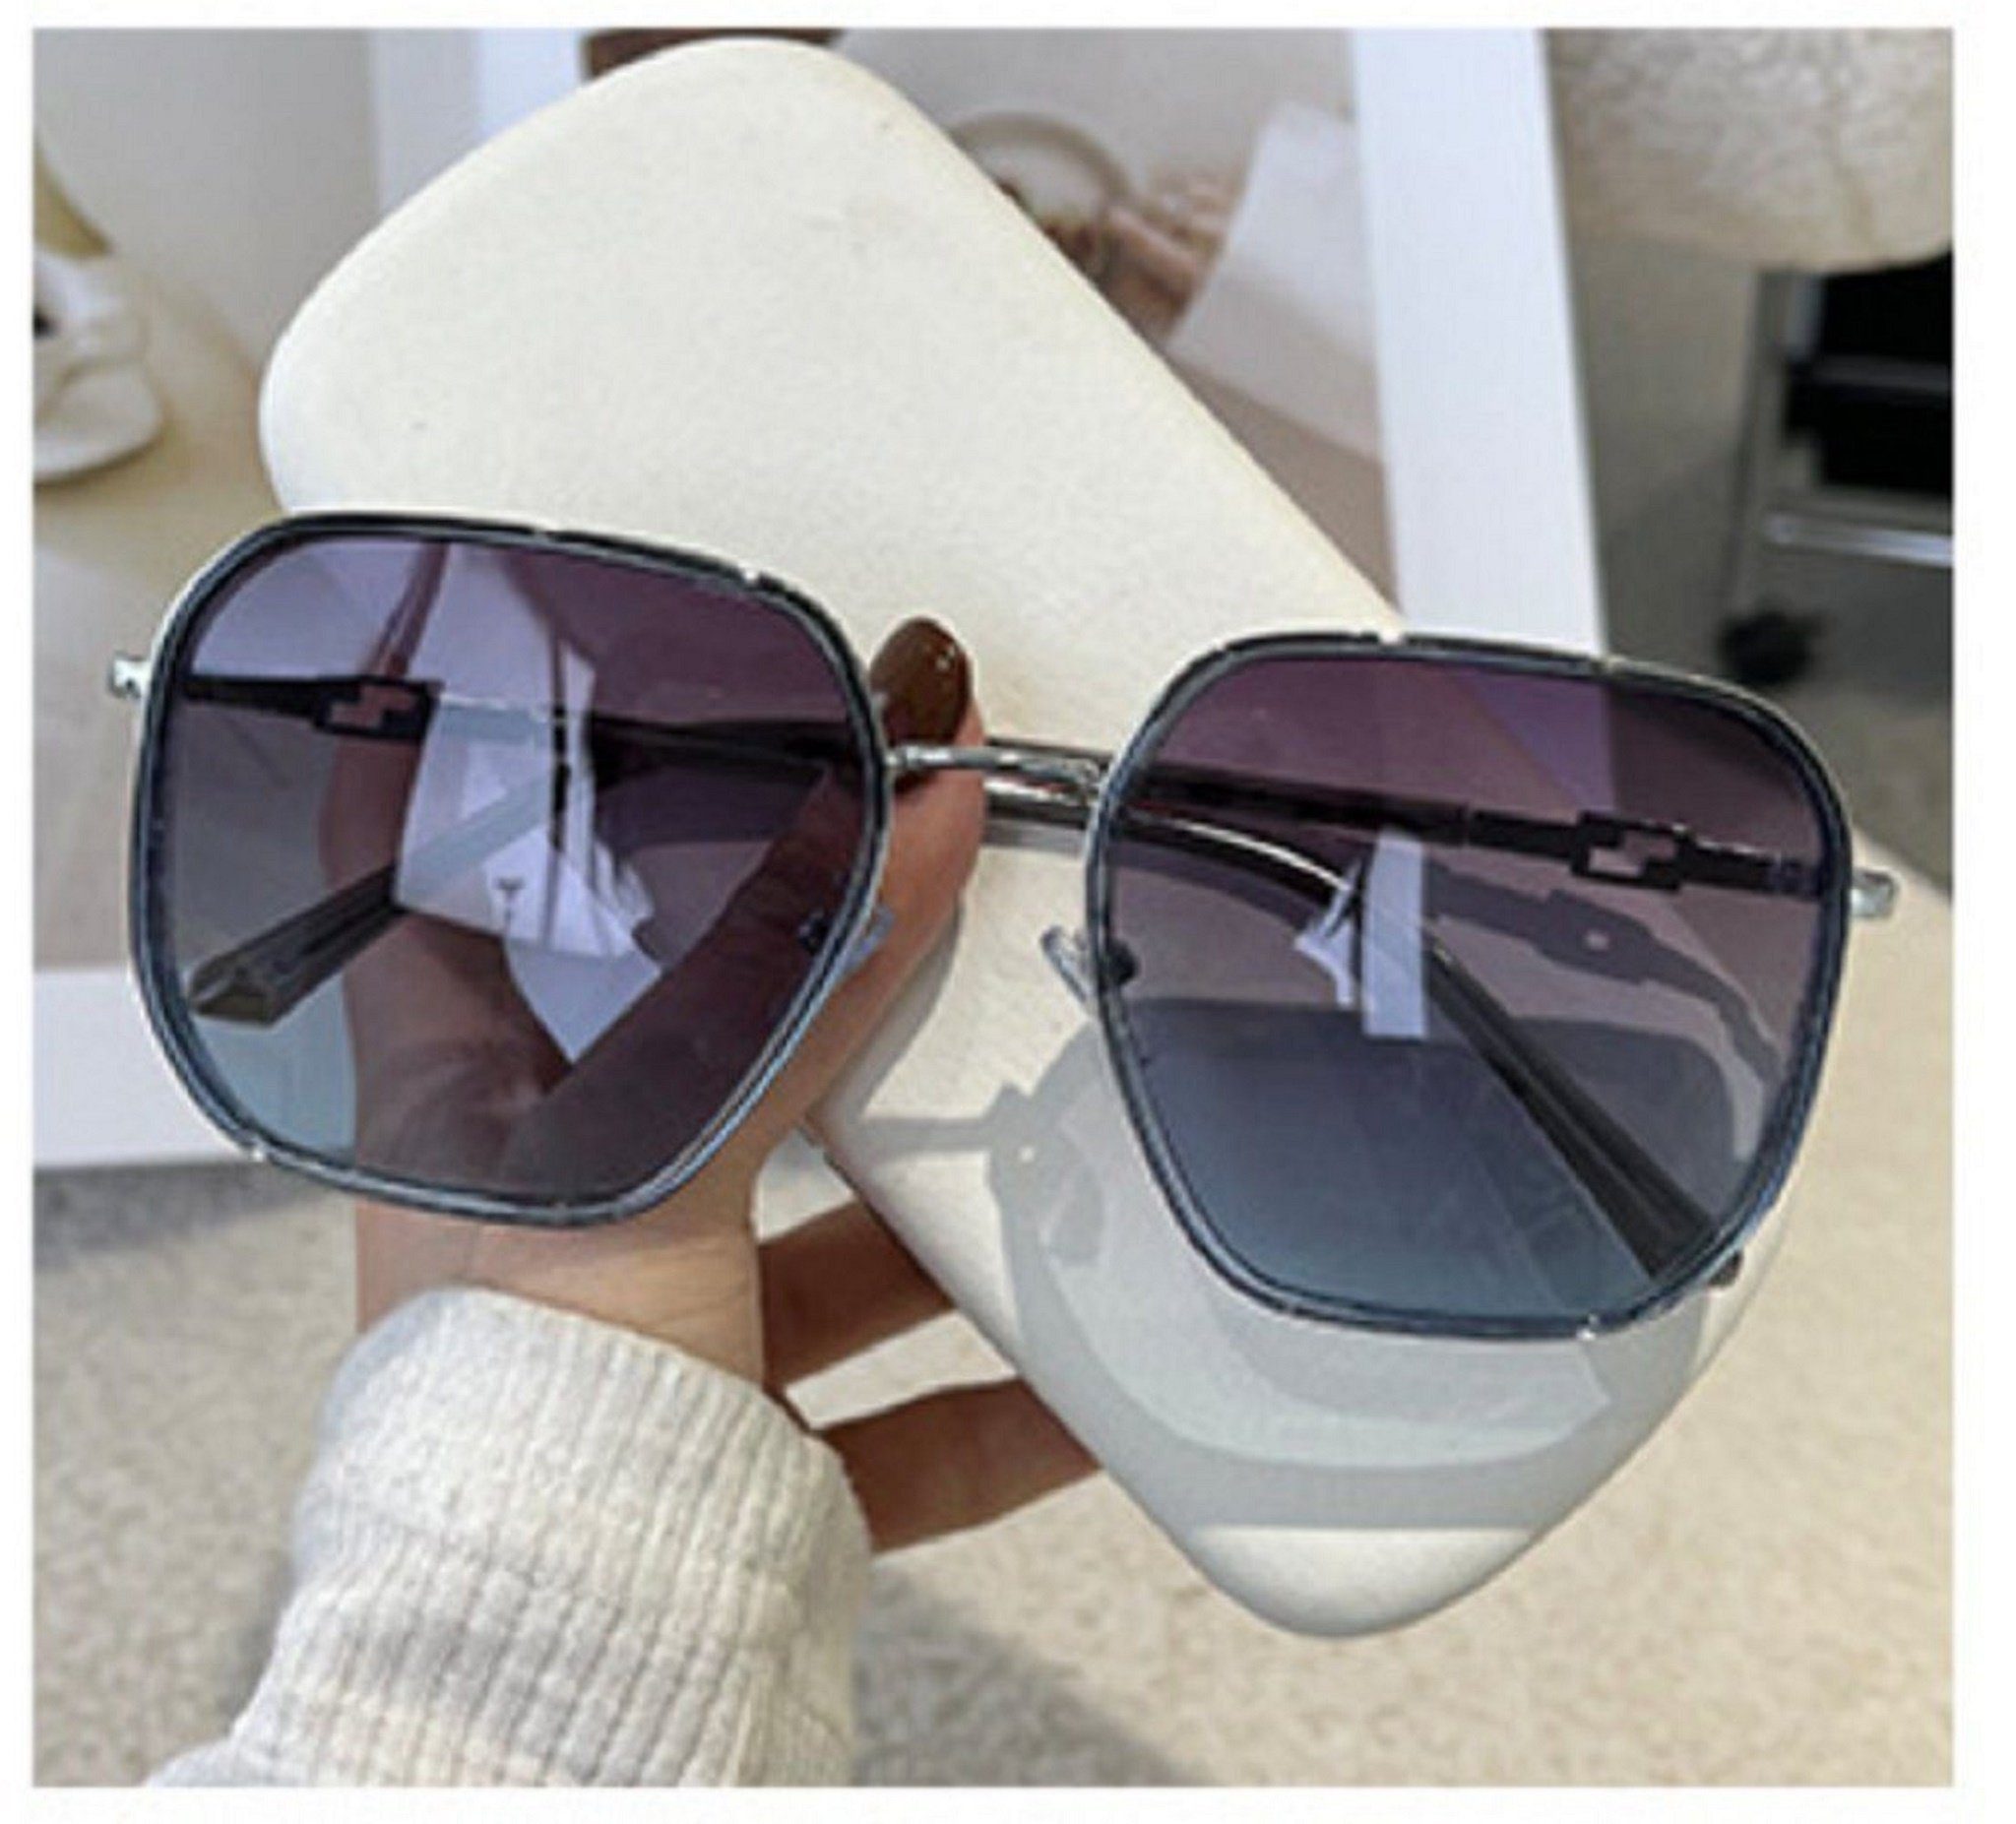 Mutoy Sonnenbrille Sonnenbrille,Sonnenbrille Damen,sonnenbrille damen polarisiert (Frauen Fashion Sonnenbrille , vintage sonnenbrille damen, mit UV400 Schutz) grauBlau | Sonnenbrillen